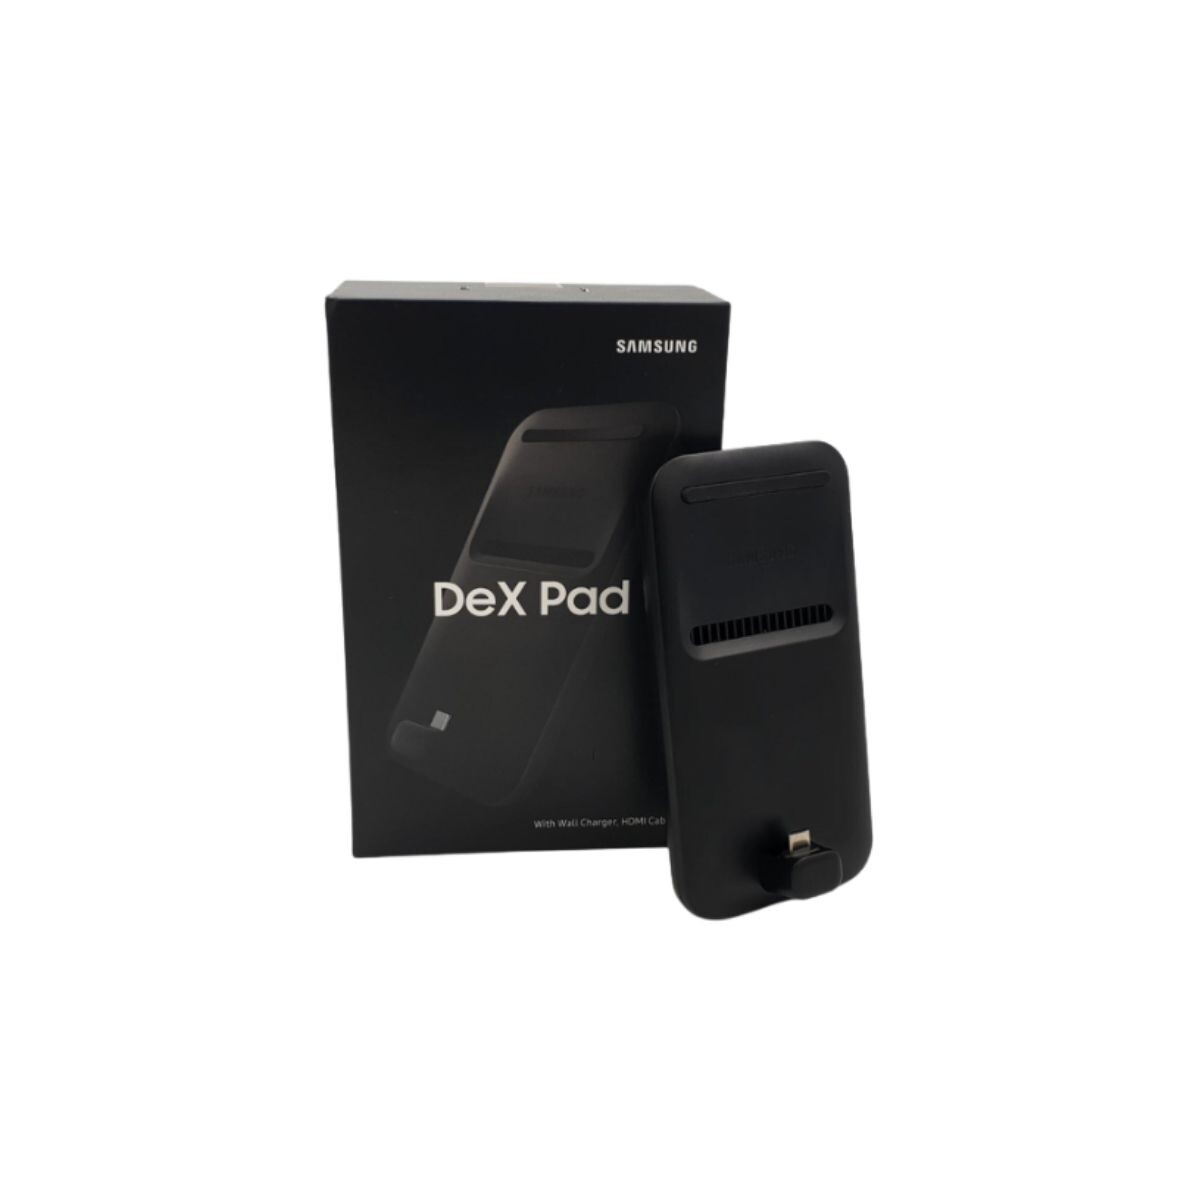 Dex Pad Samsung 